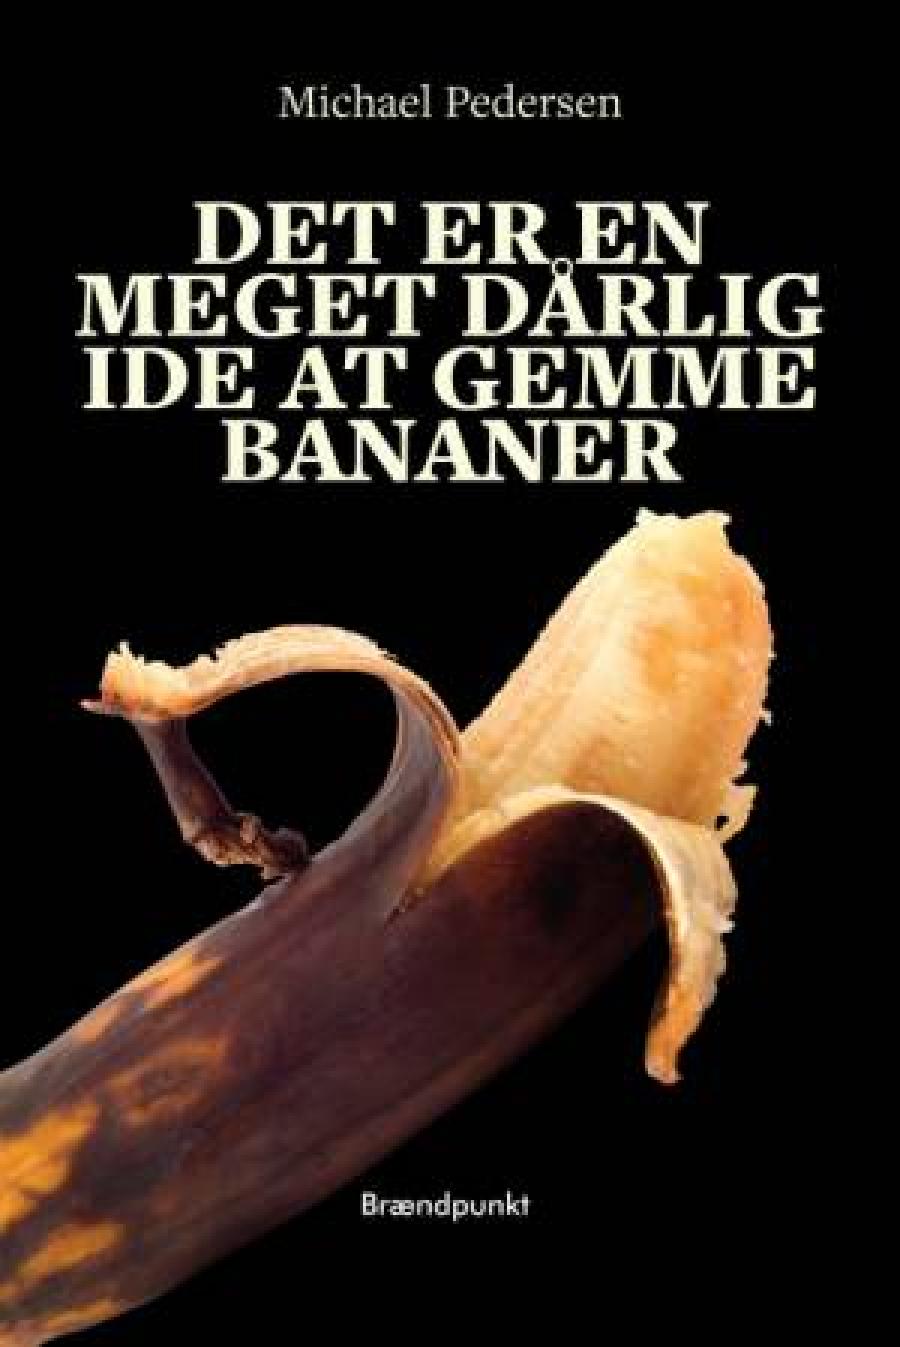 Forside af bogen: Det er en meget dårlig idé at gemme bananer 